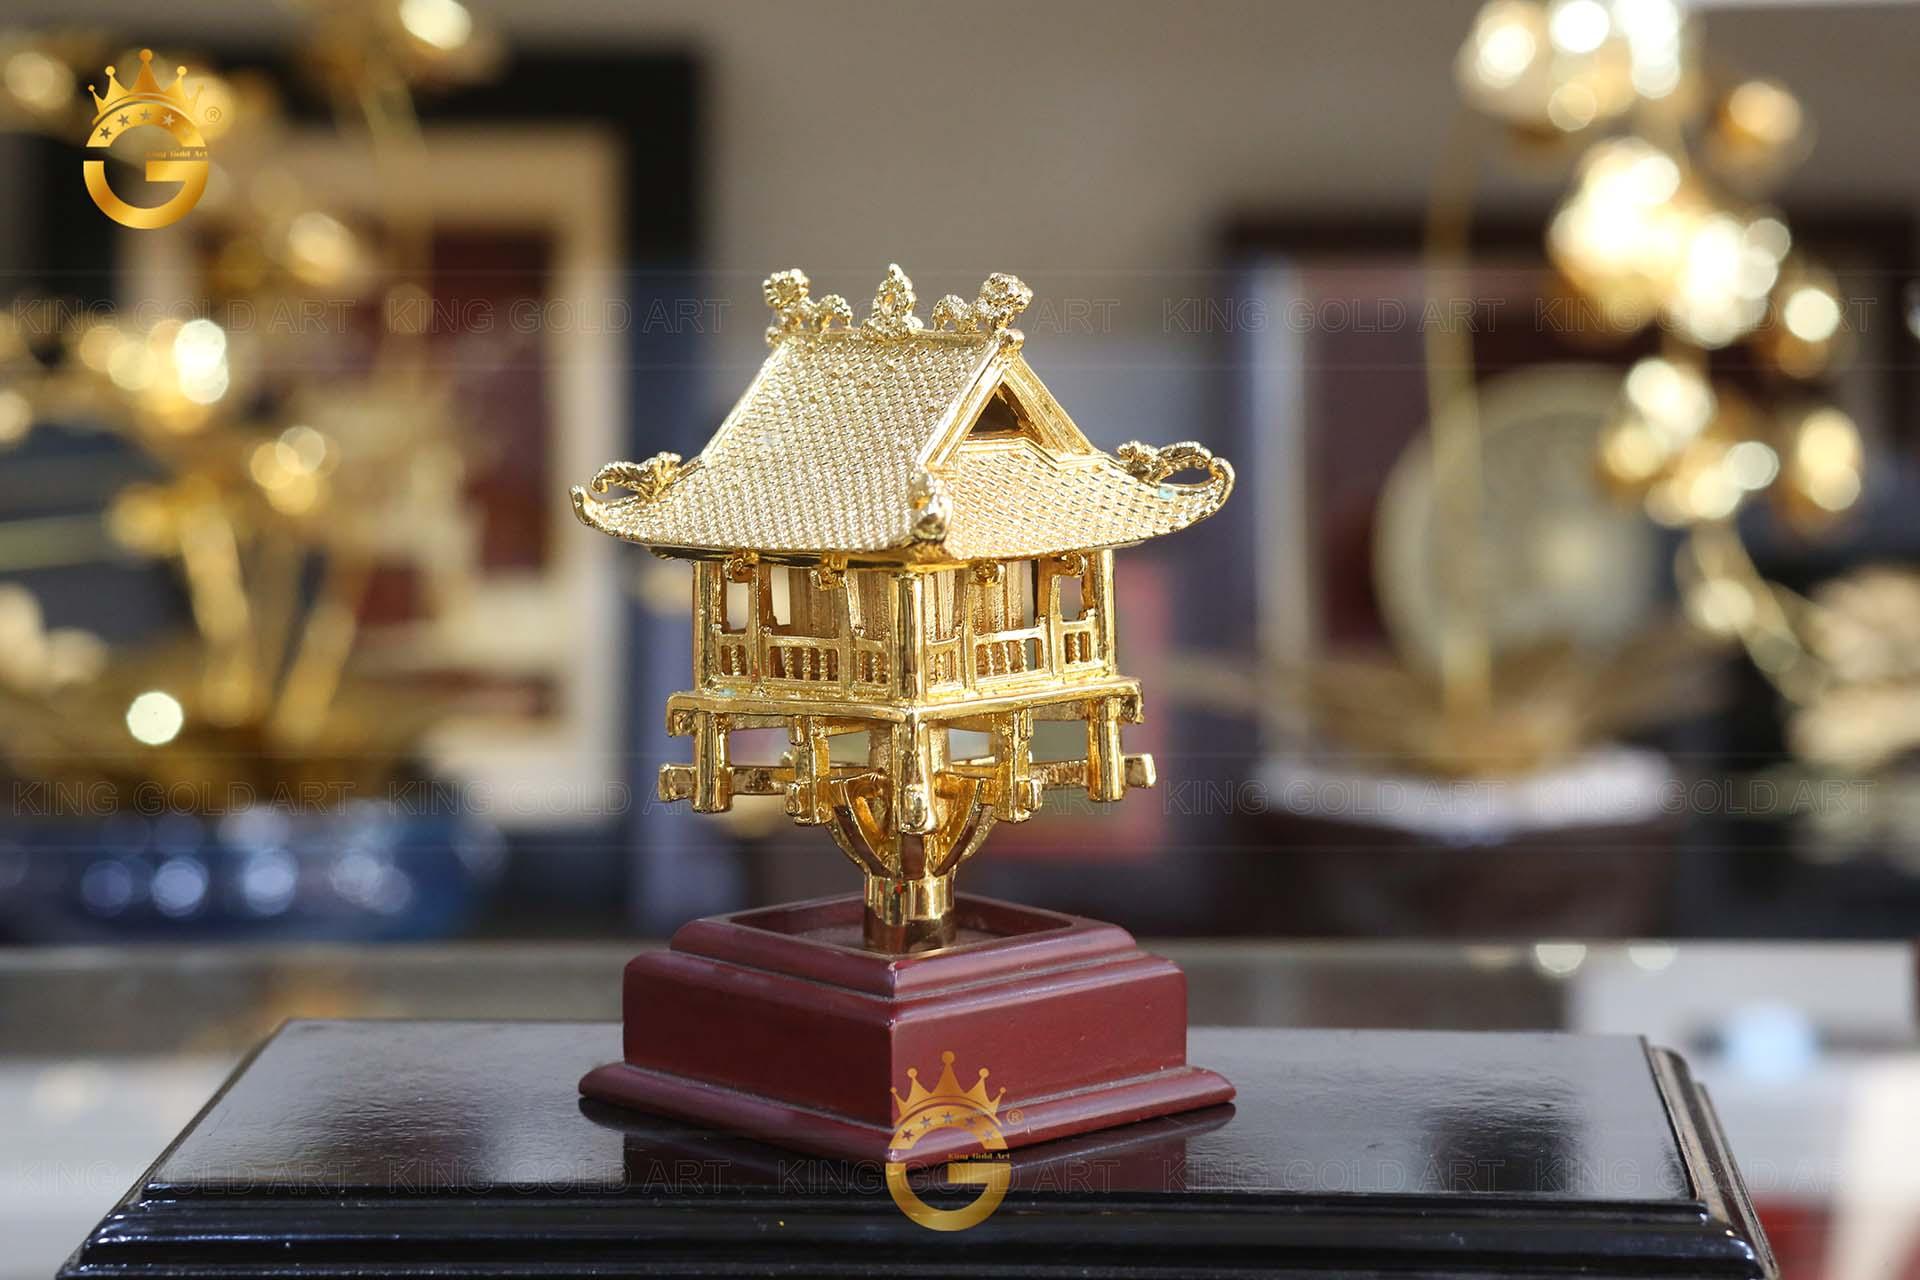 Quà tặng mô hình chùa Một Cột bằng đồng mạ vàng tinh xảo